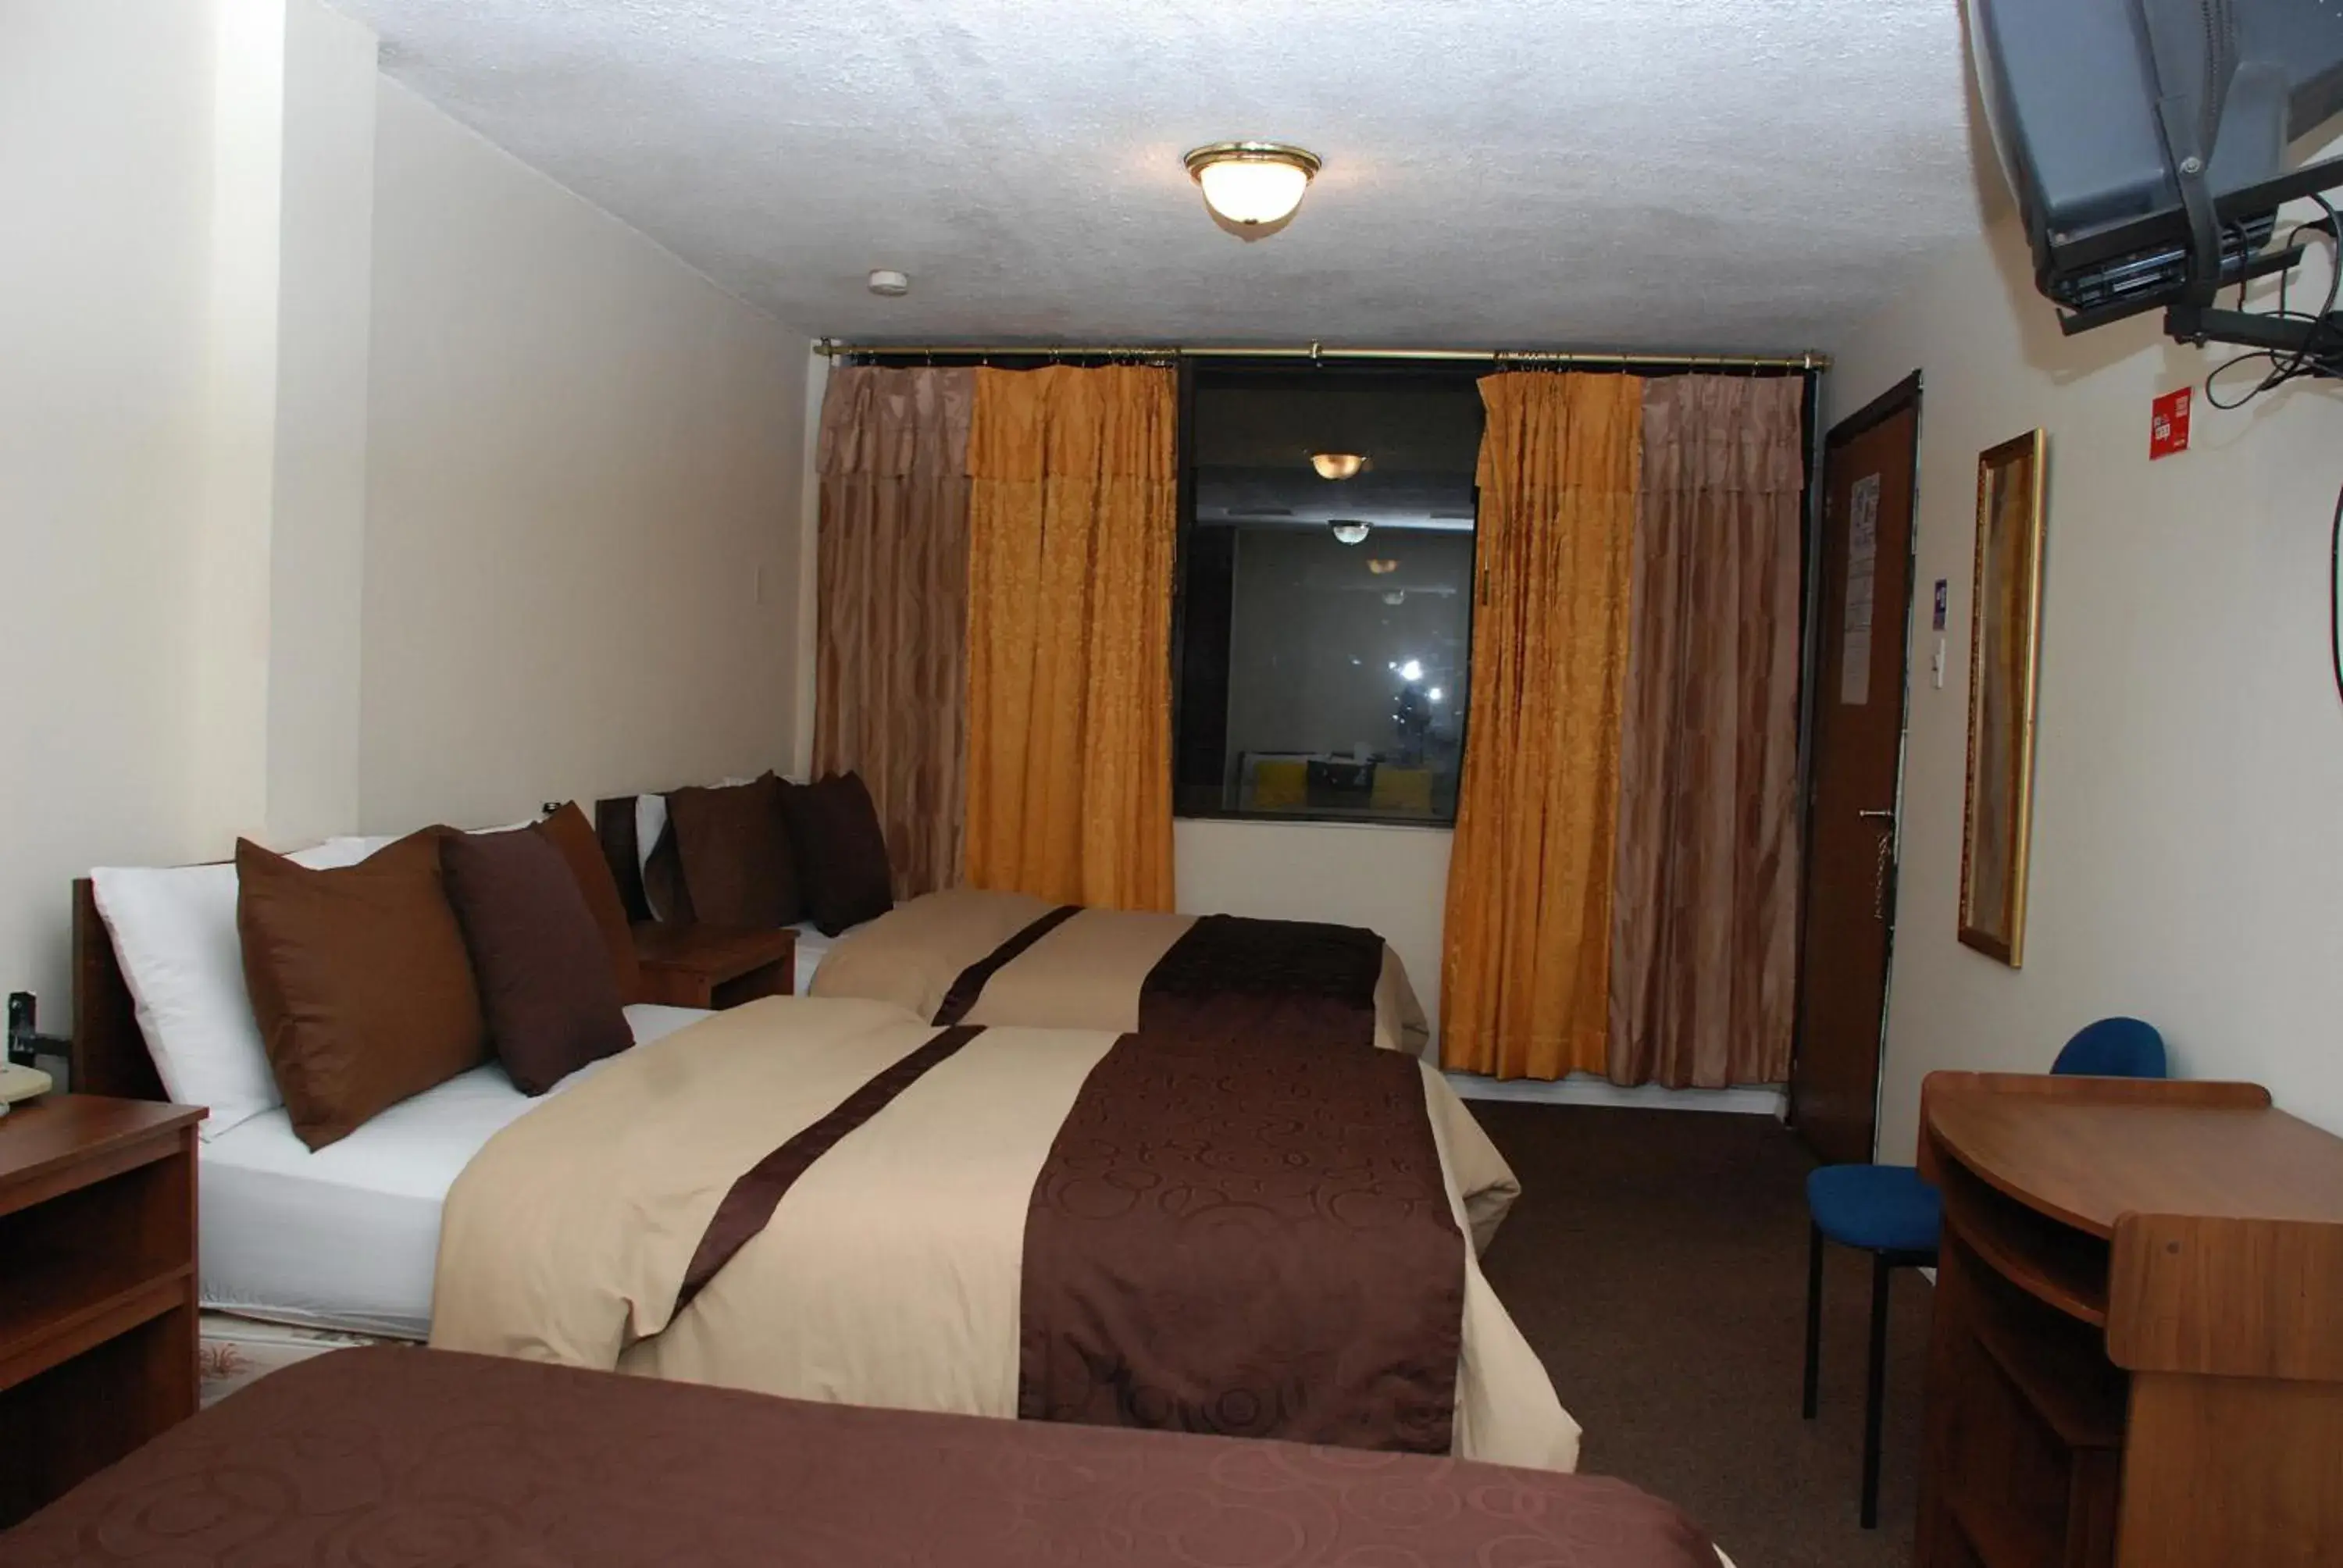 Bed in Hotel Bonaventure